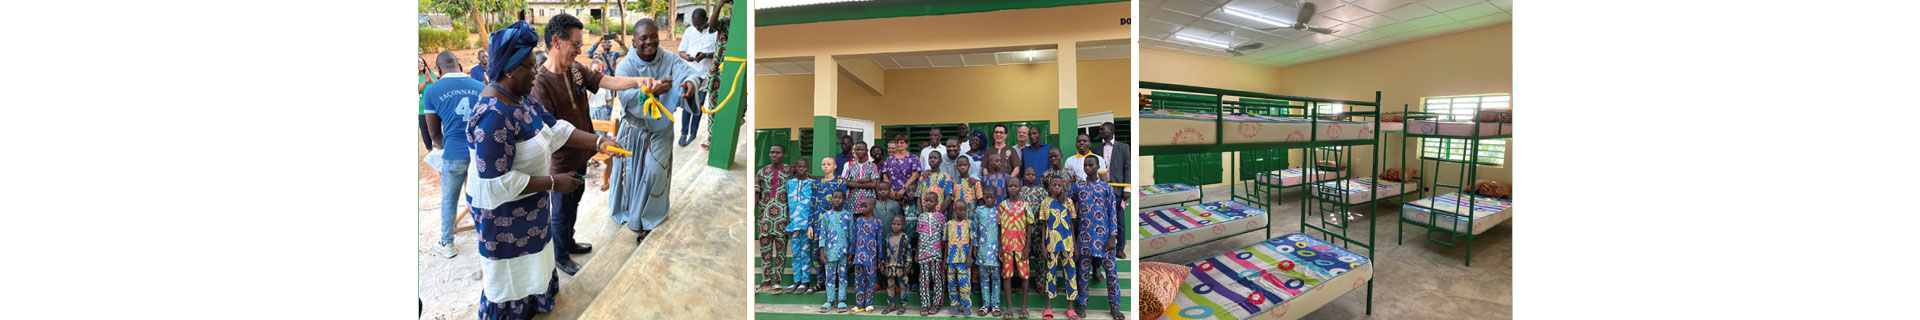 Bénin : La Fondation soutient les enfants aveugles et malvoyants